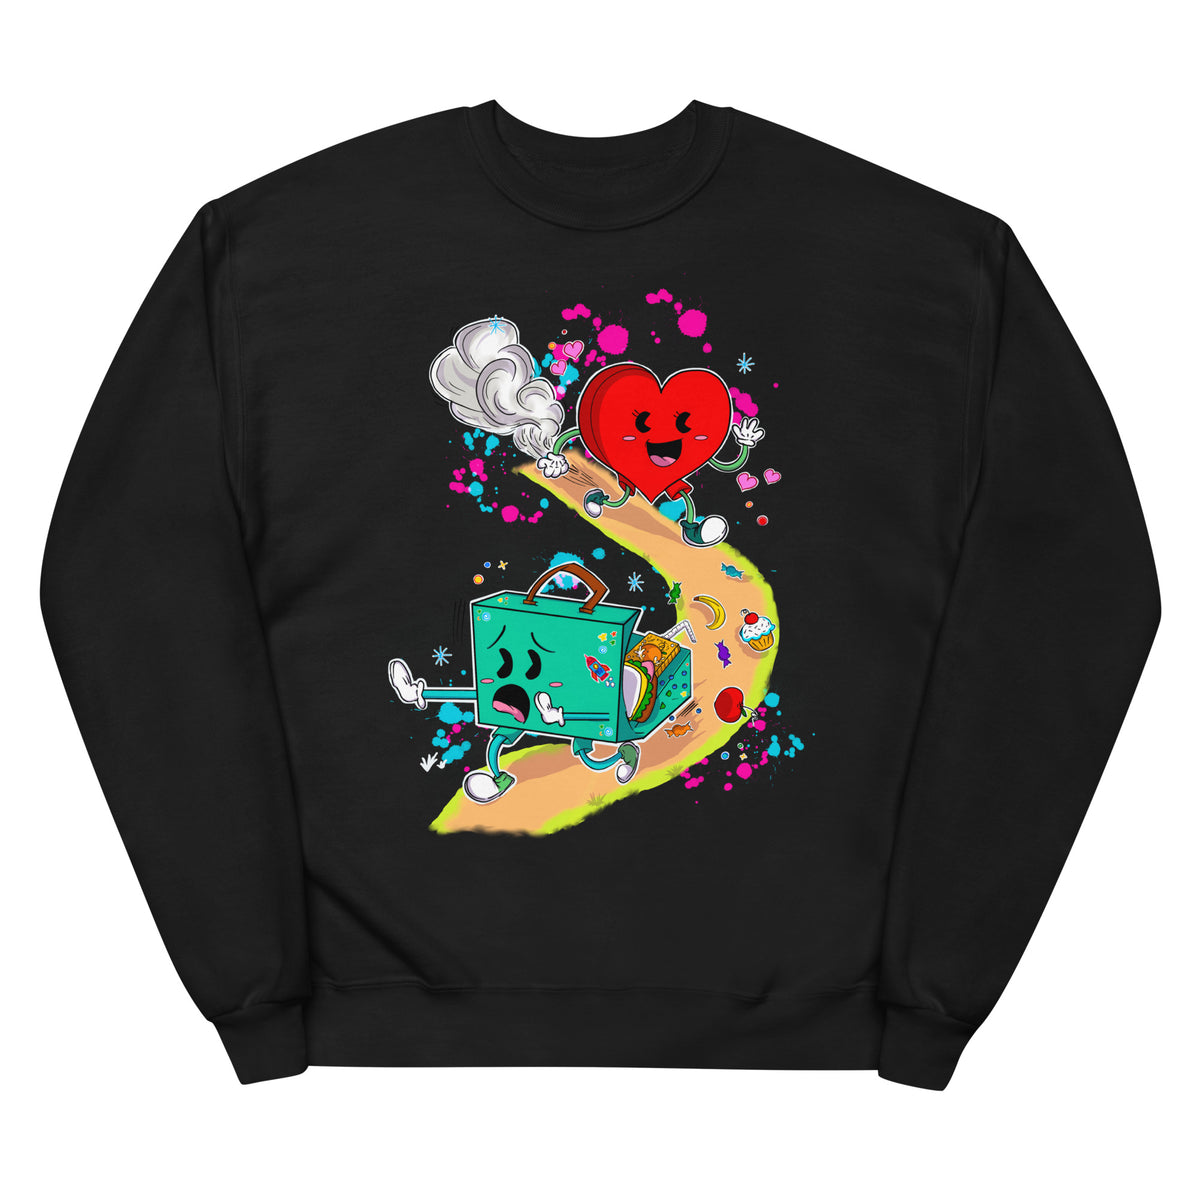 "The Heart Knows what it Wants" Fleece Sweatshirt